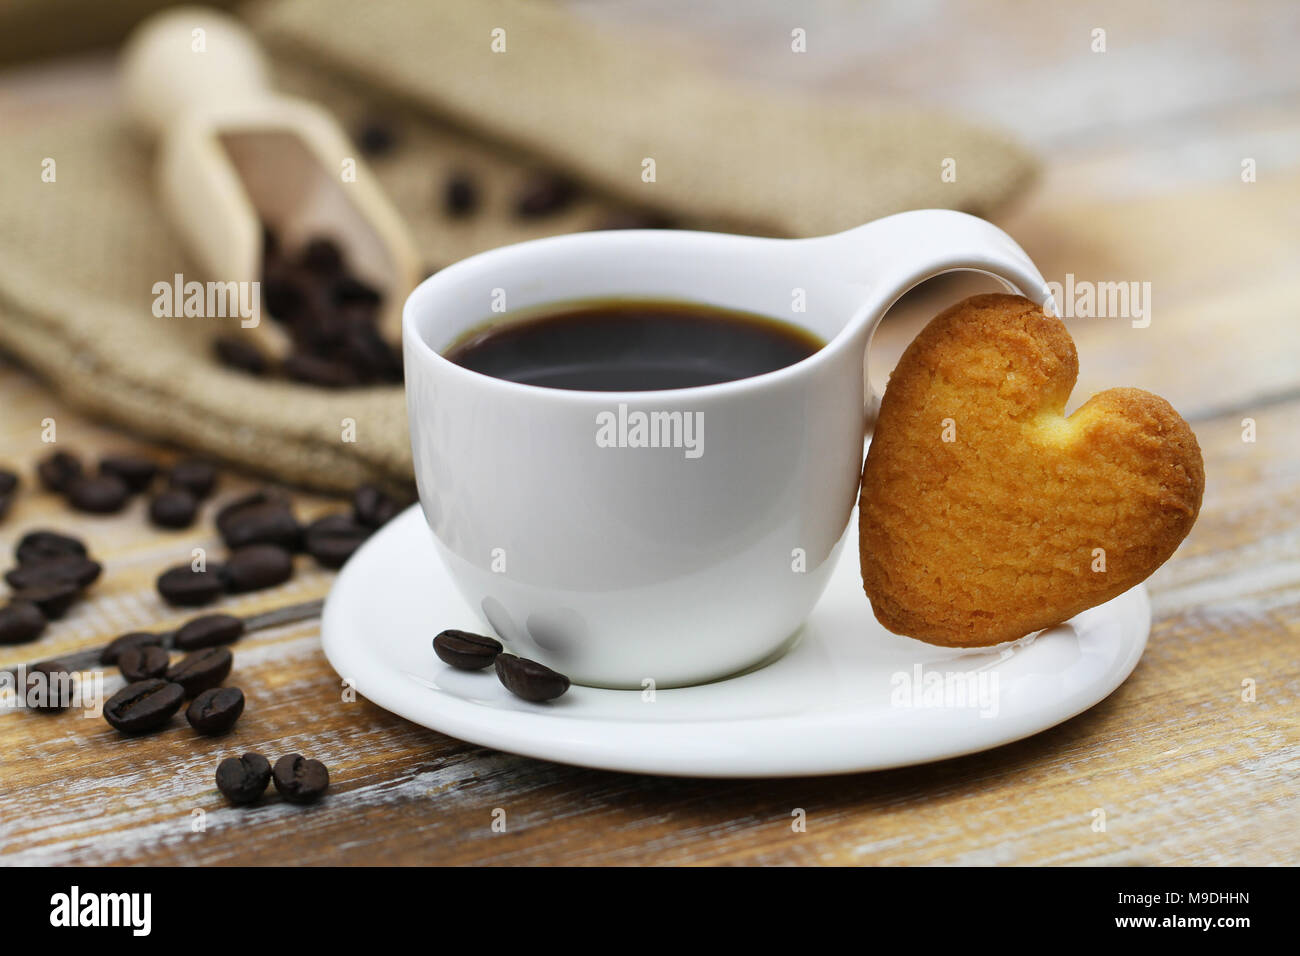 Biscuit en forme de coeur appuyé contre tasse de café sur la surface en bois rustique Banque D'Images